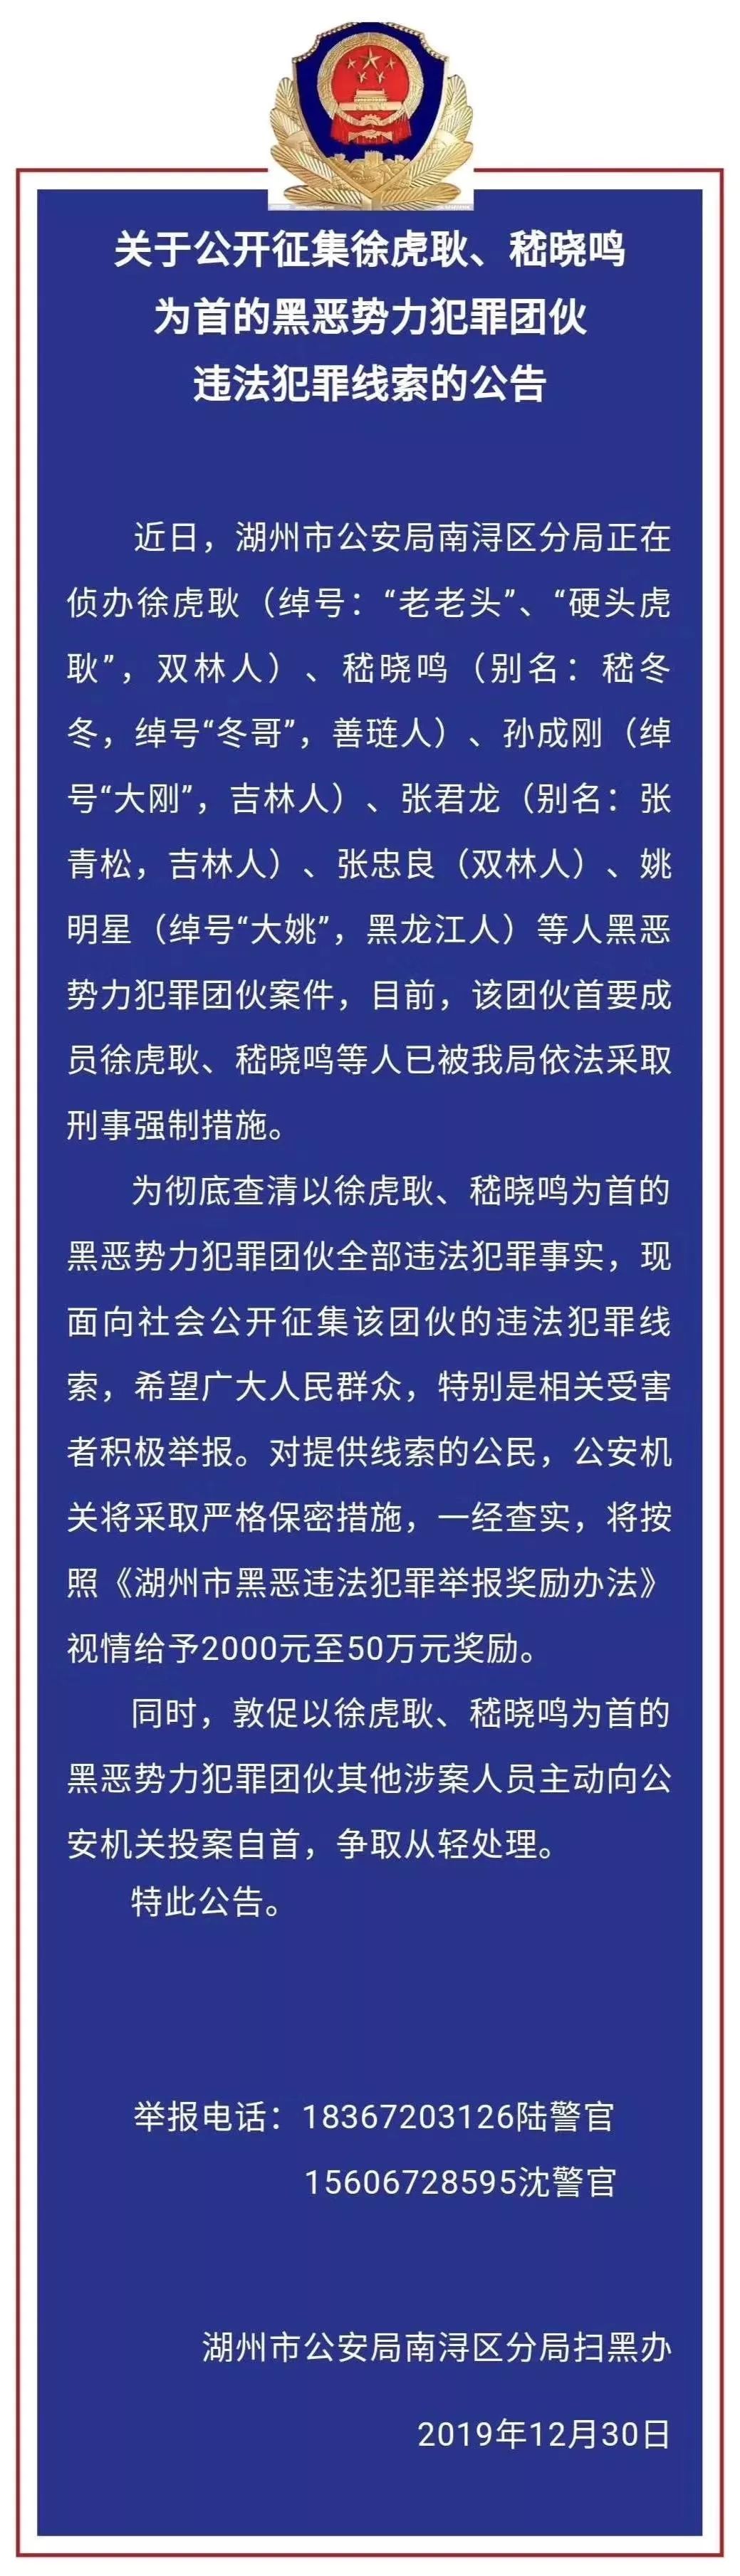 关于公开征集徐虎耿,嵇晓鸣为首的黑恶势力犯罪团伙违法犯罪线索的